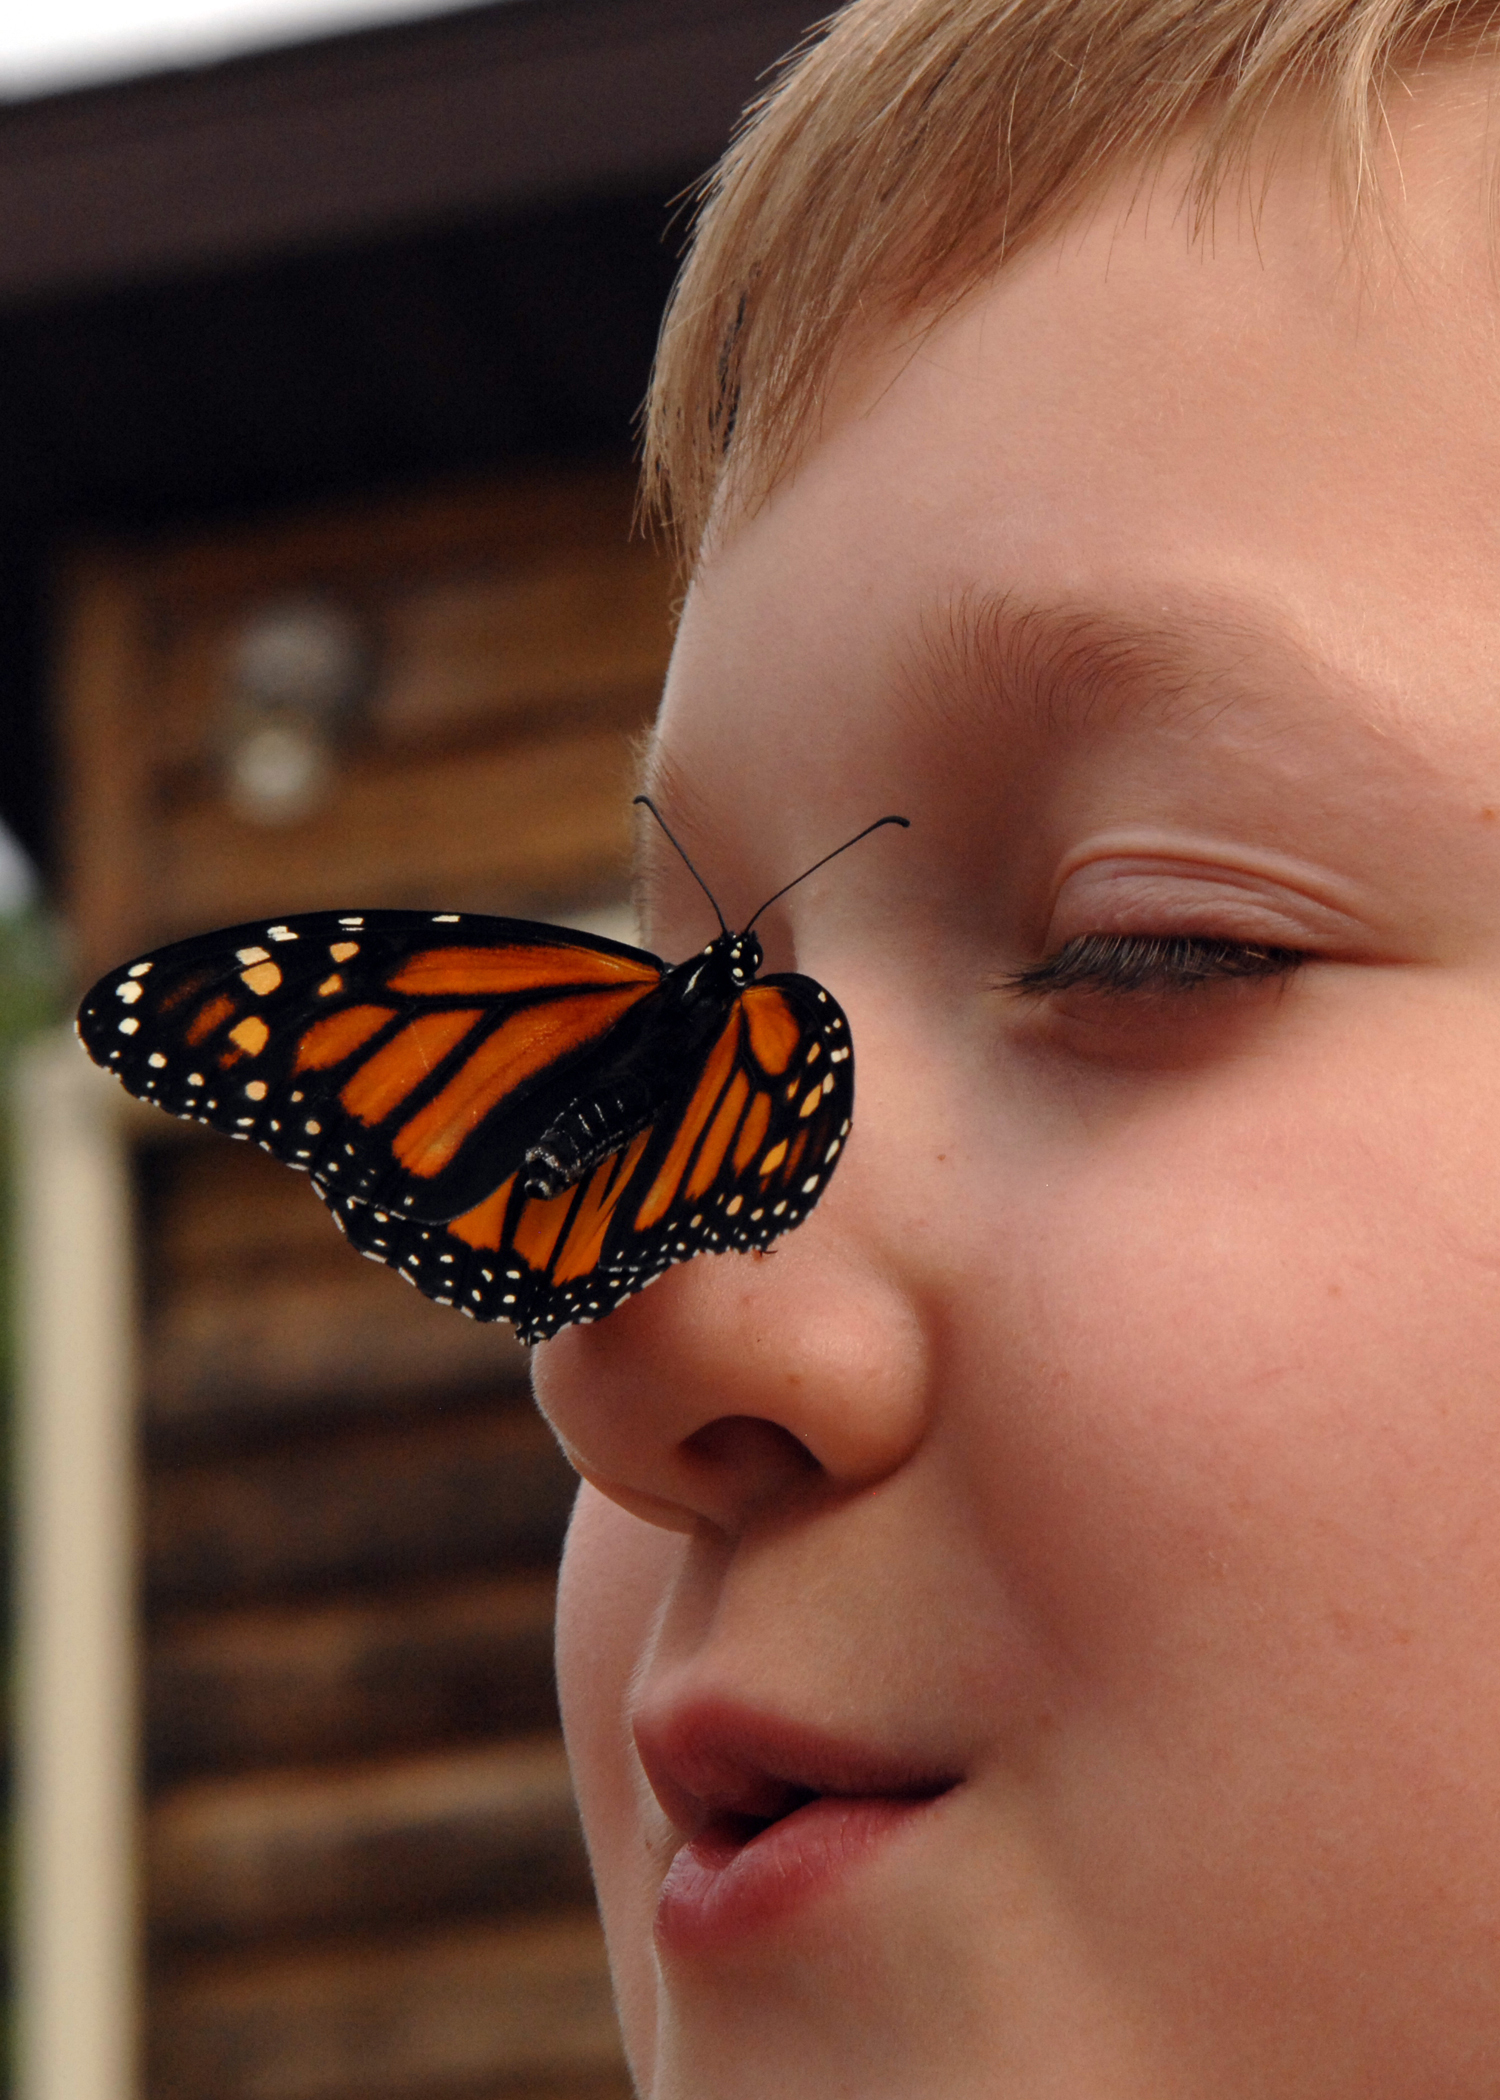 Покажи где бабочка. Бабочка. Бабочка на носу. Бабочка для мальчика. Человек бабочка.